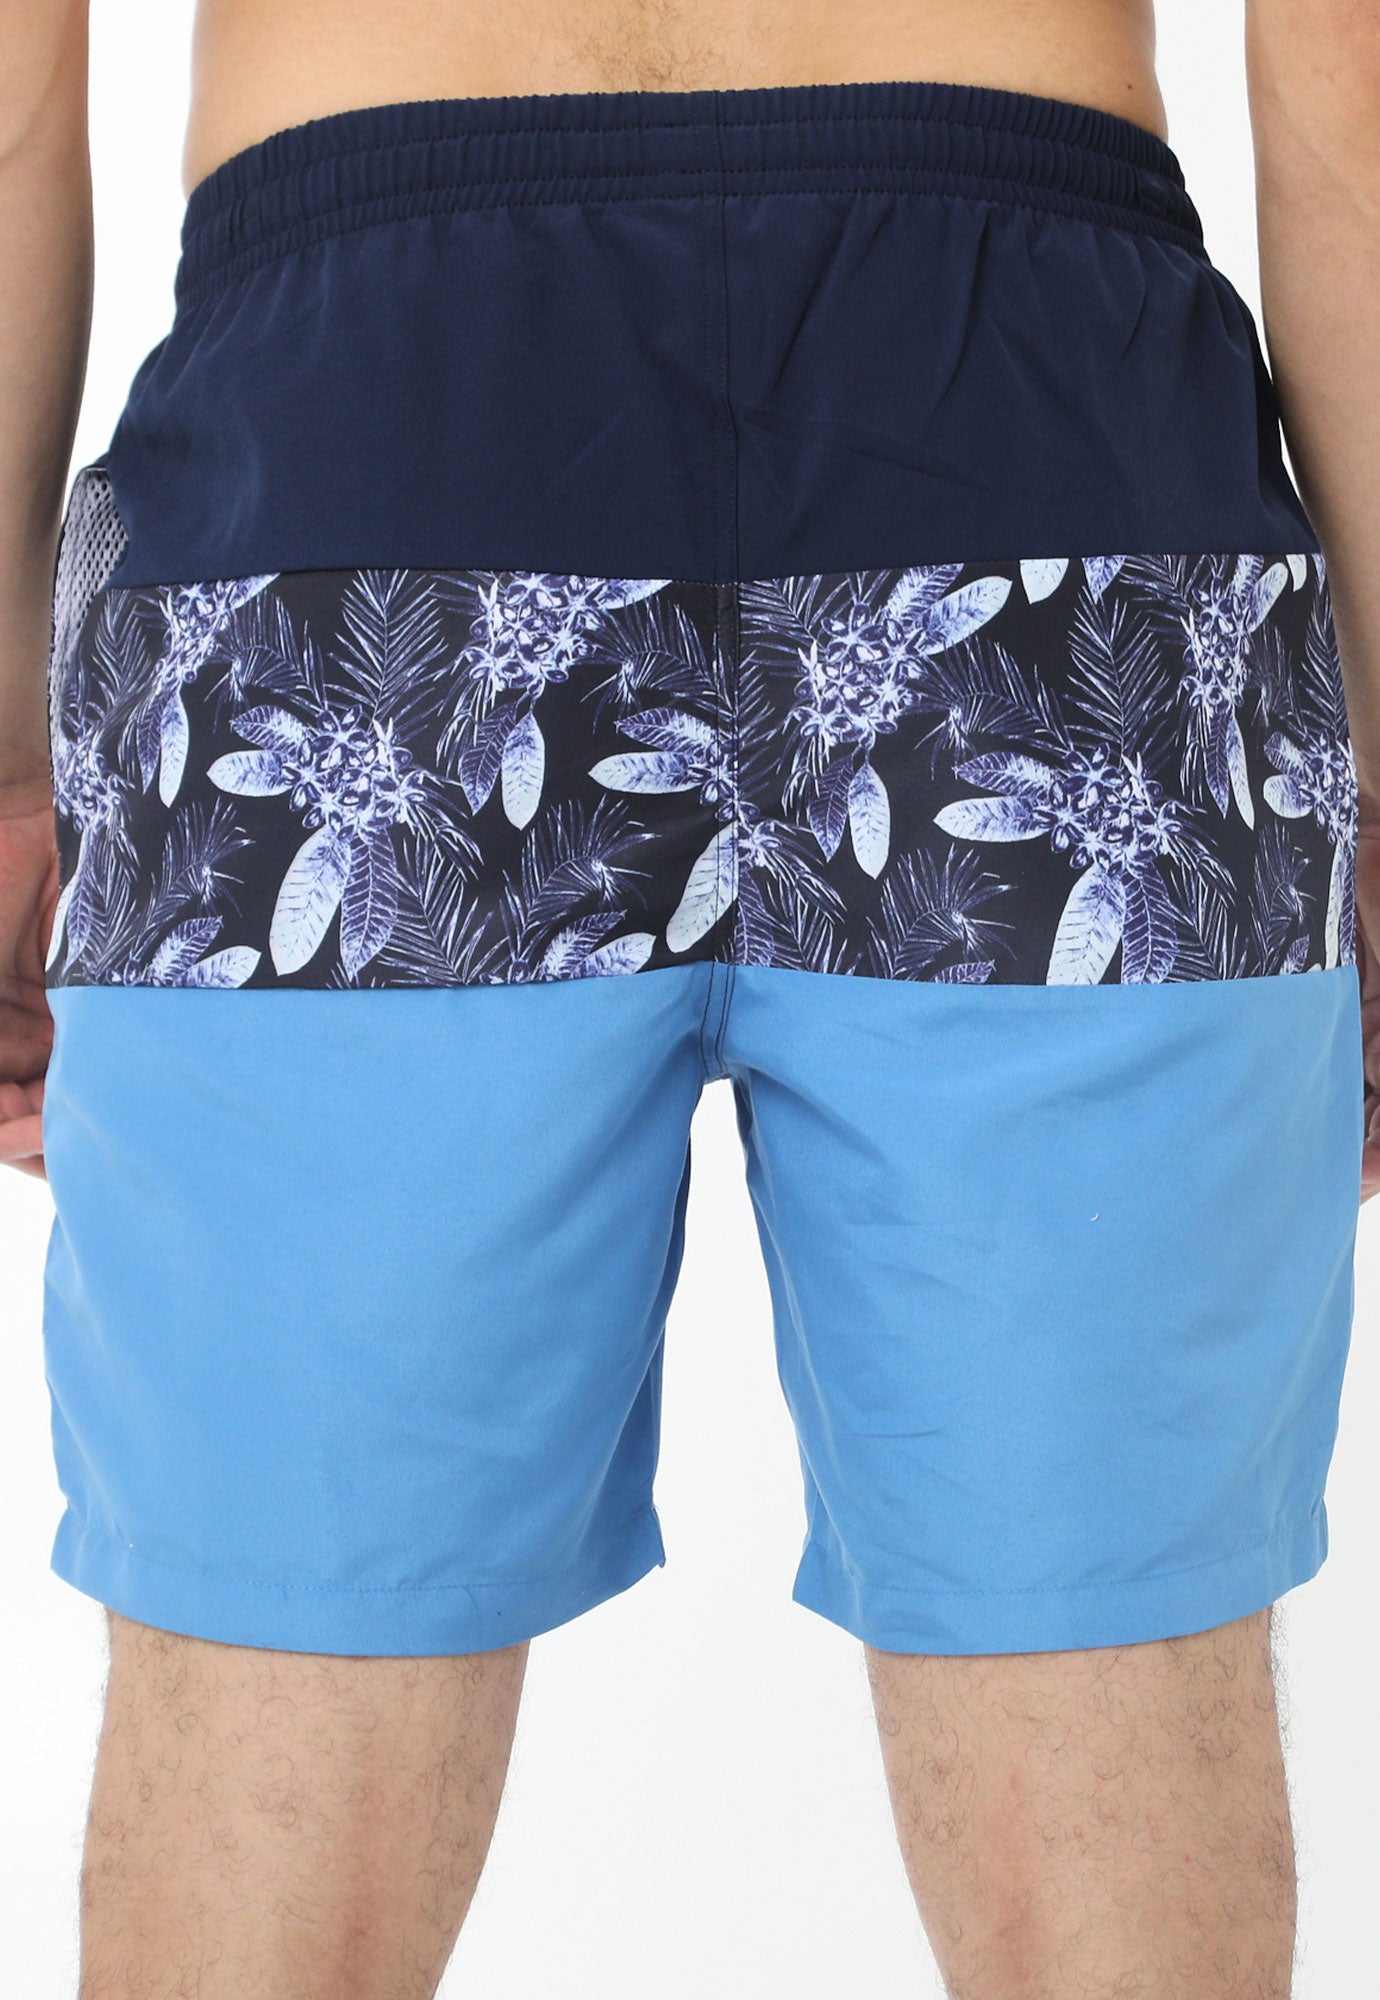 Pantaloneta de playa azul oscuro en bloques, bloque intermedio sublimado, elástico en la cintura, cordón ajustable y suspensorio interno en malla para hombre